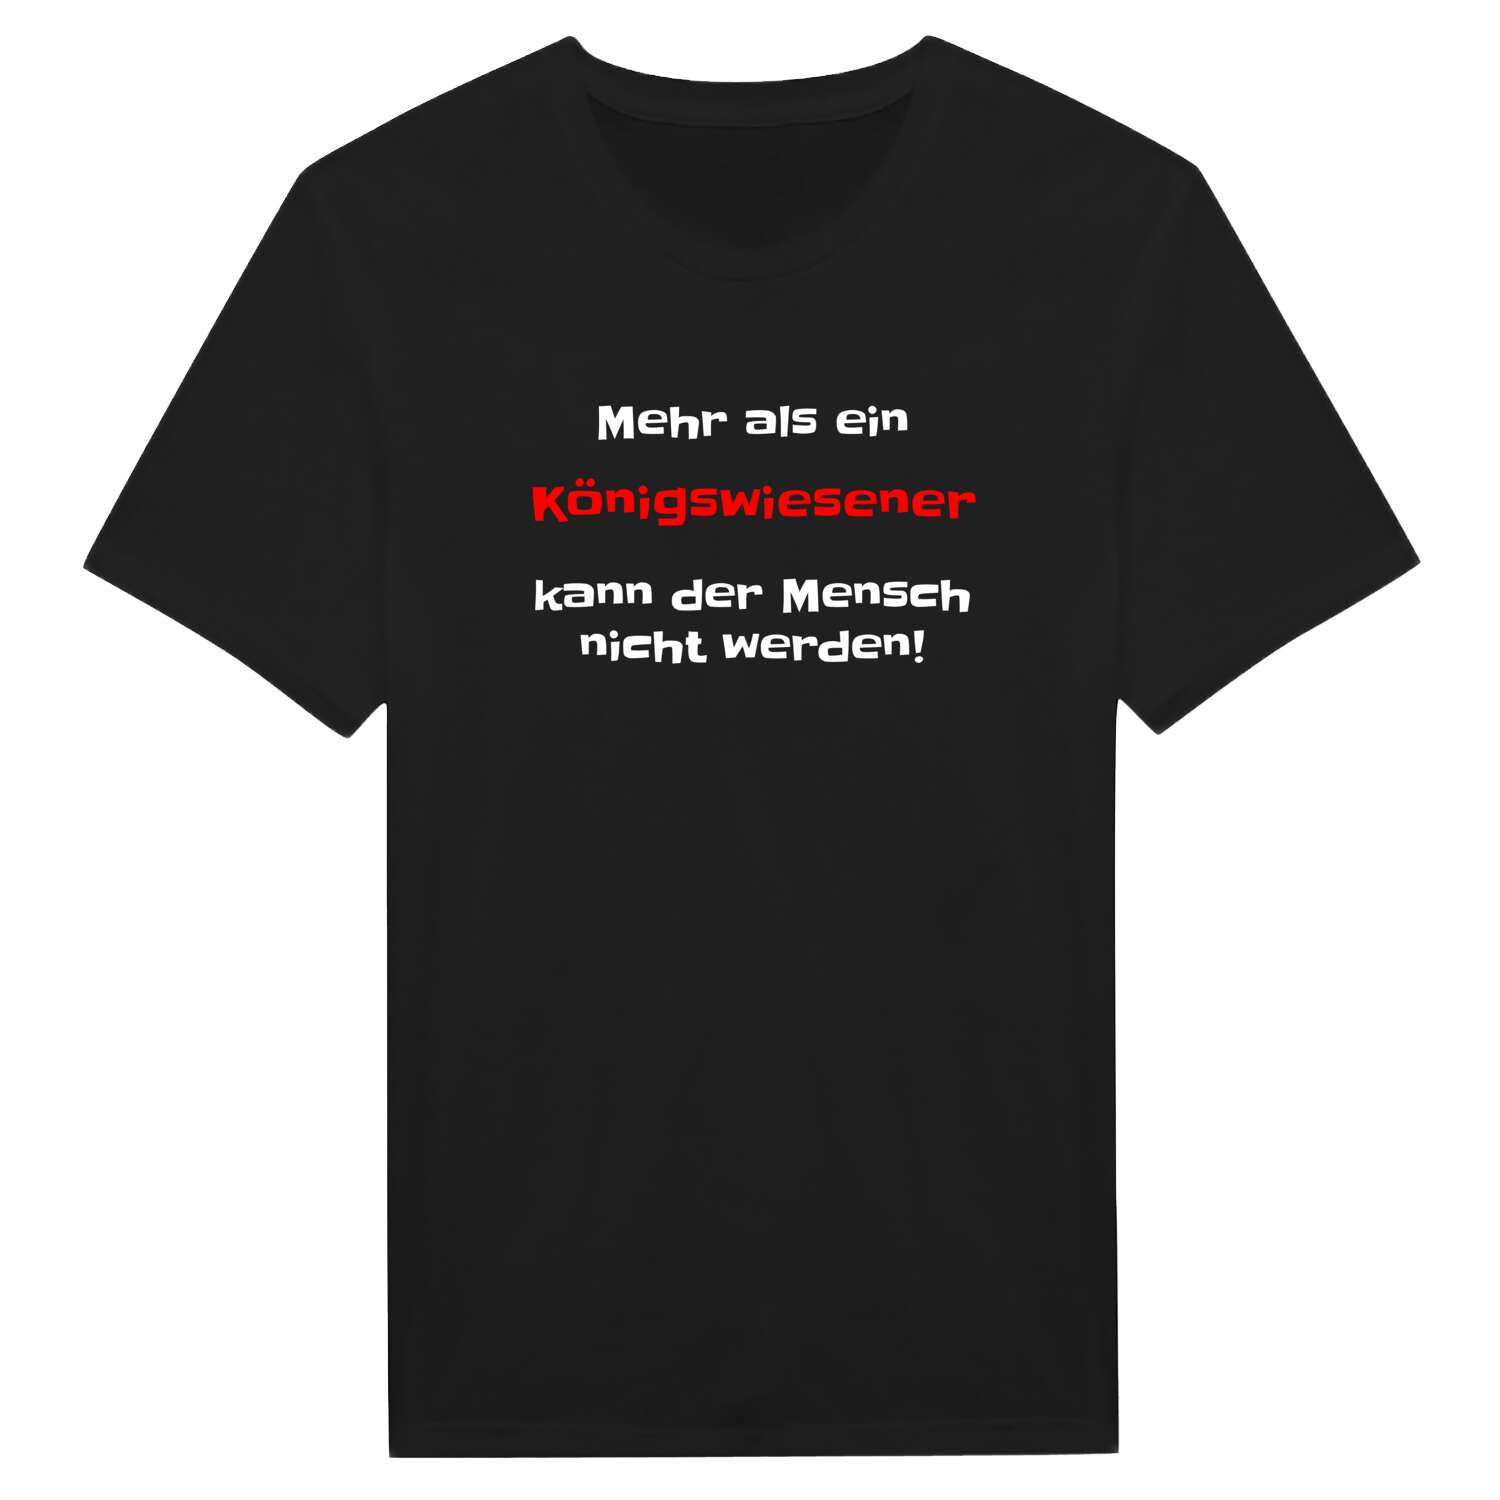 Königswiesen T-Shirt »Mehr als ein«